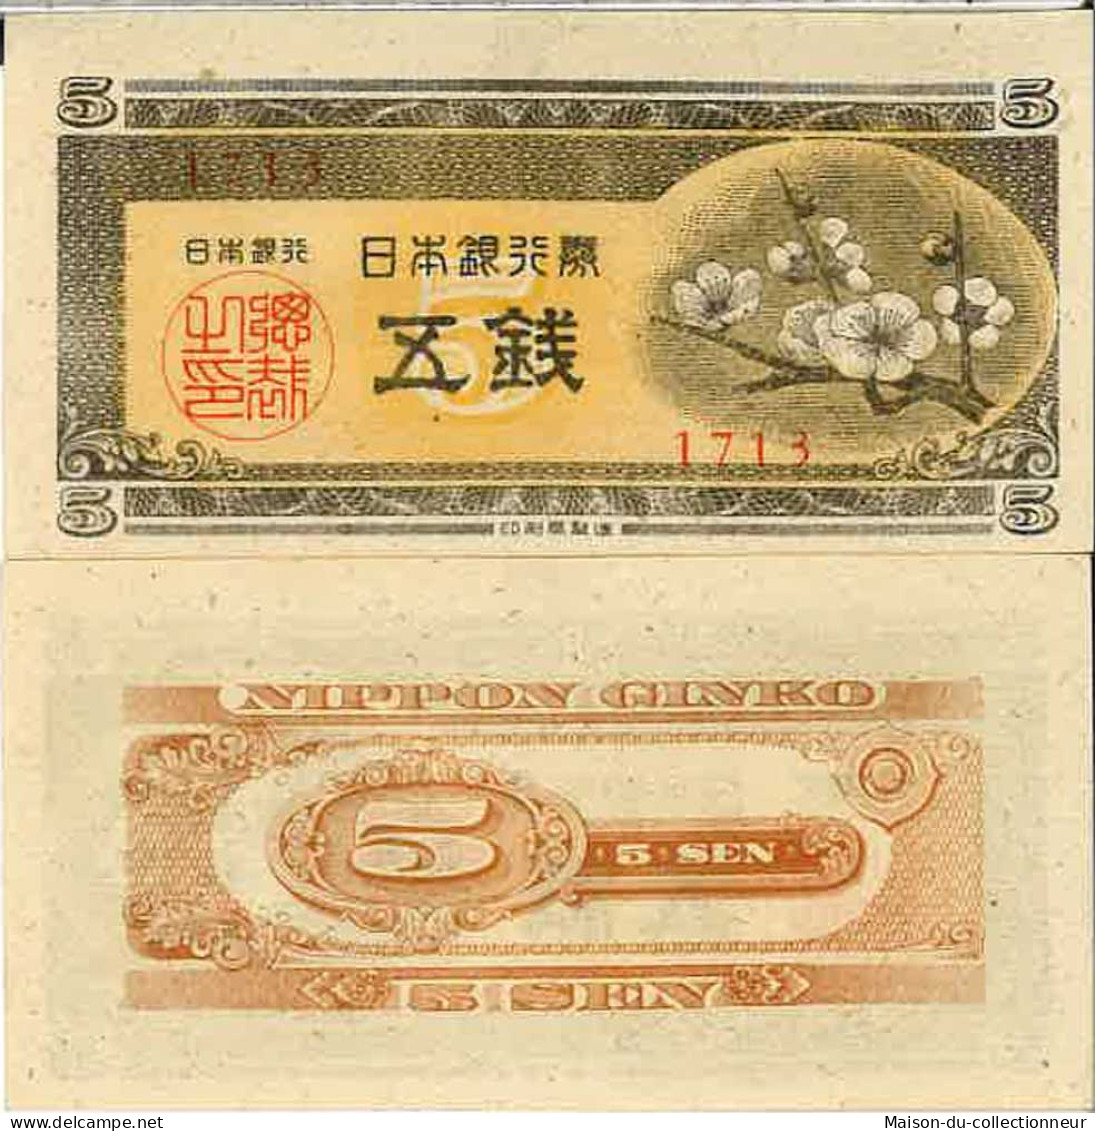 Billet De Banque Collection Japon - PK N° 83 - 5 Sen - Japan